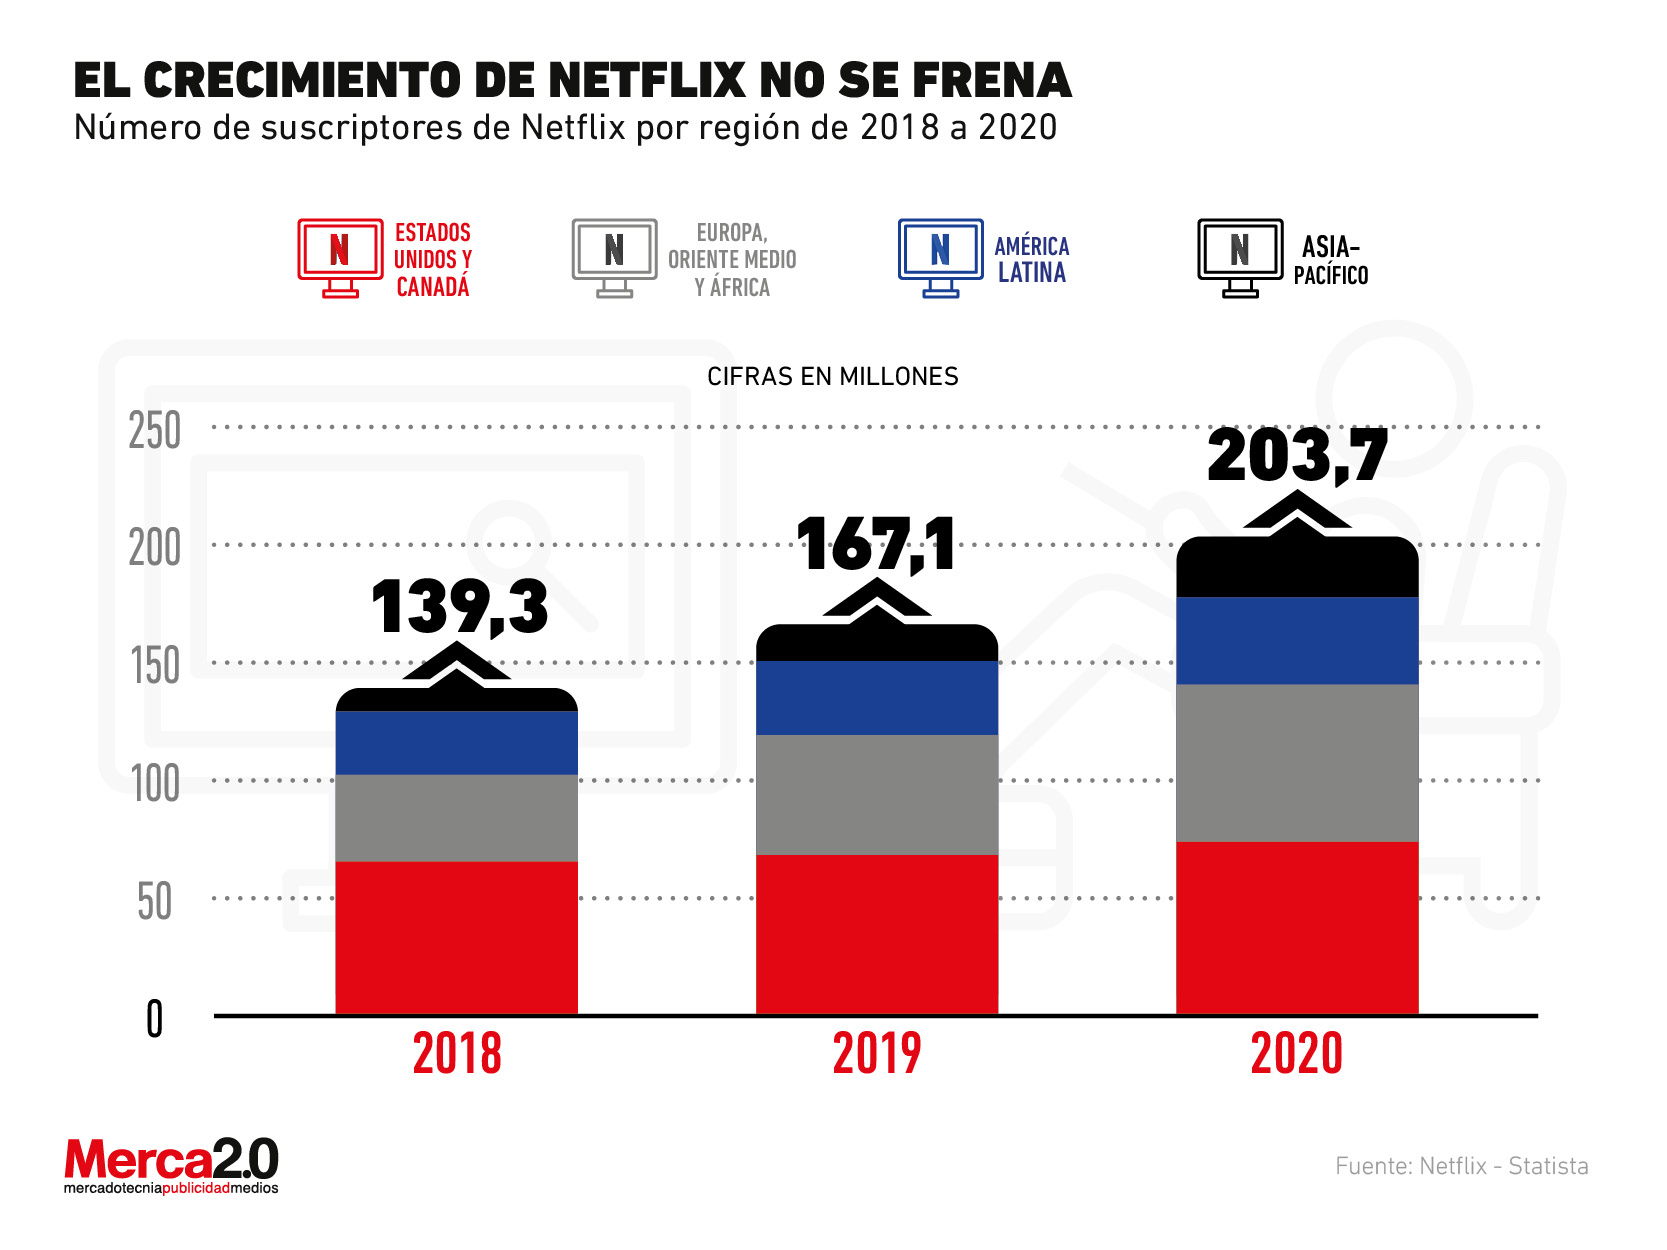 2020 fue el año en que Netflix superó la barrera de los 200 millones de suscriptores